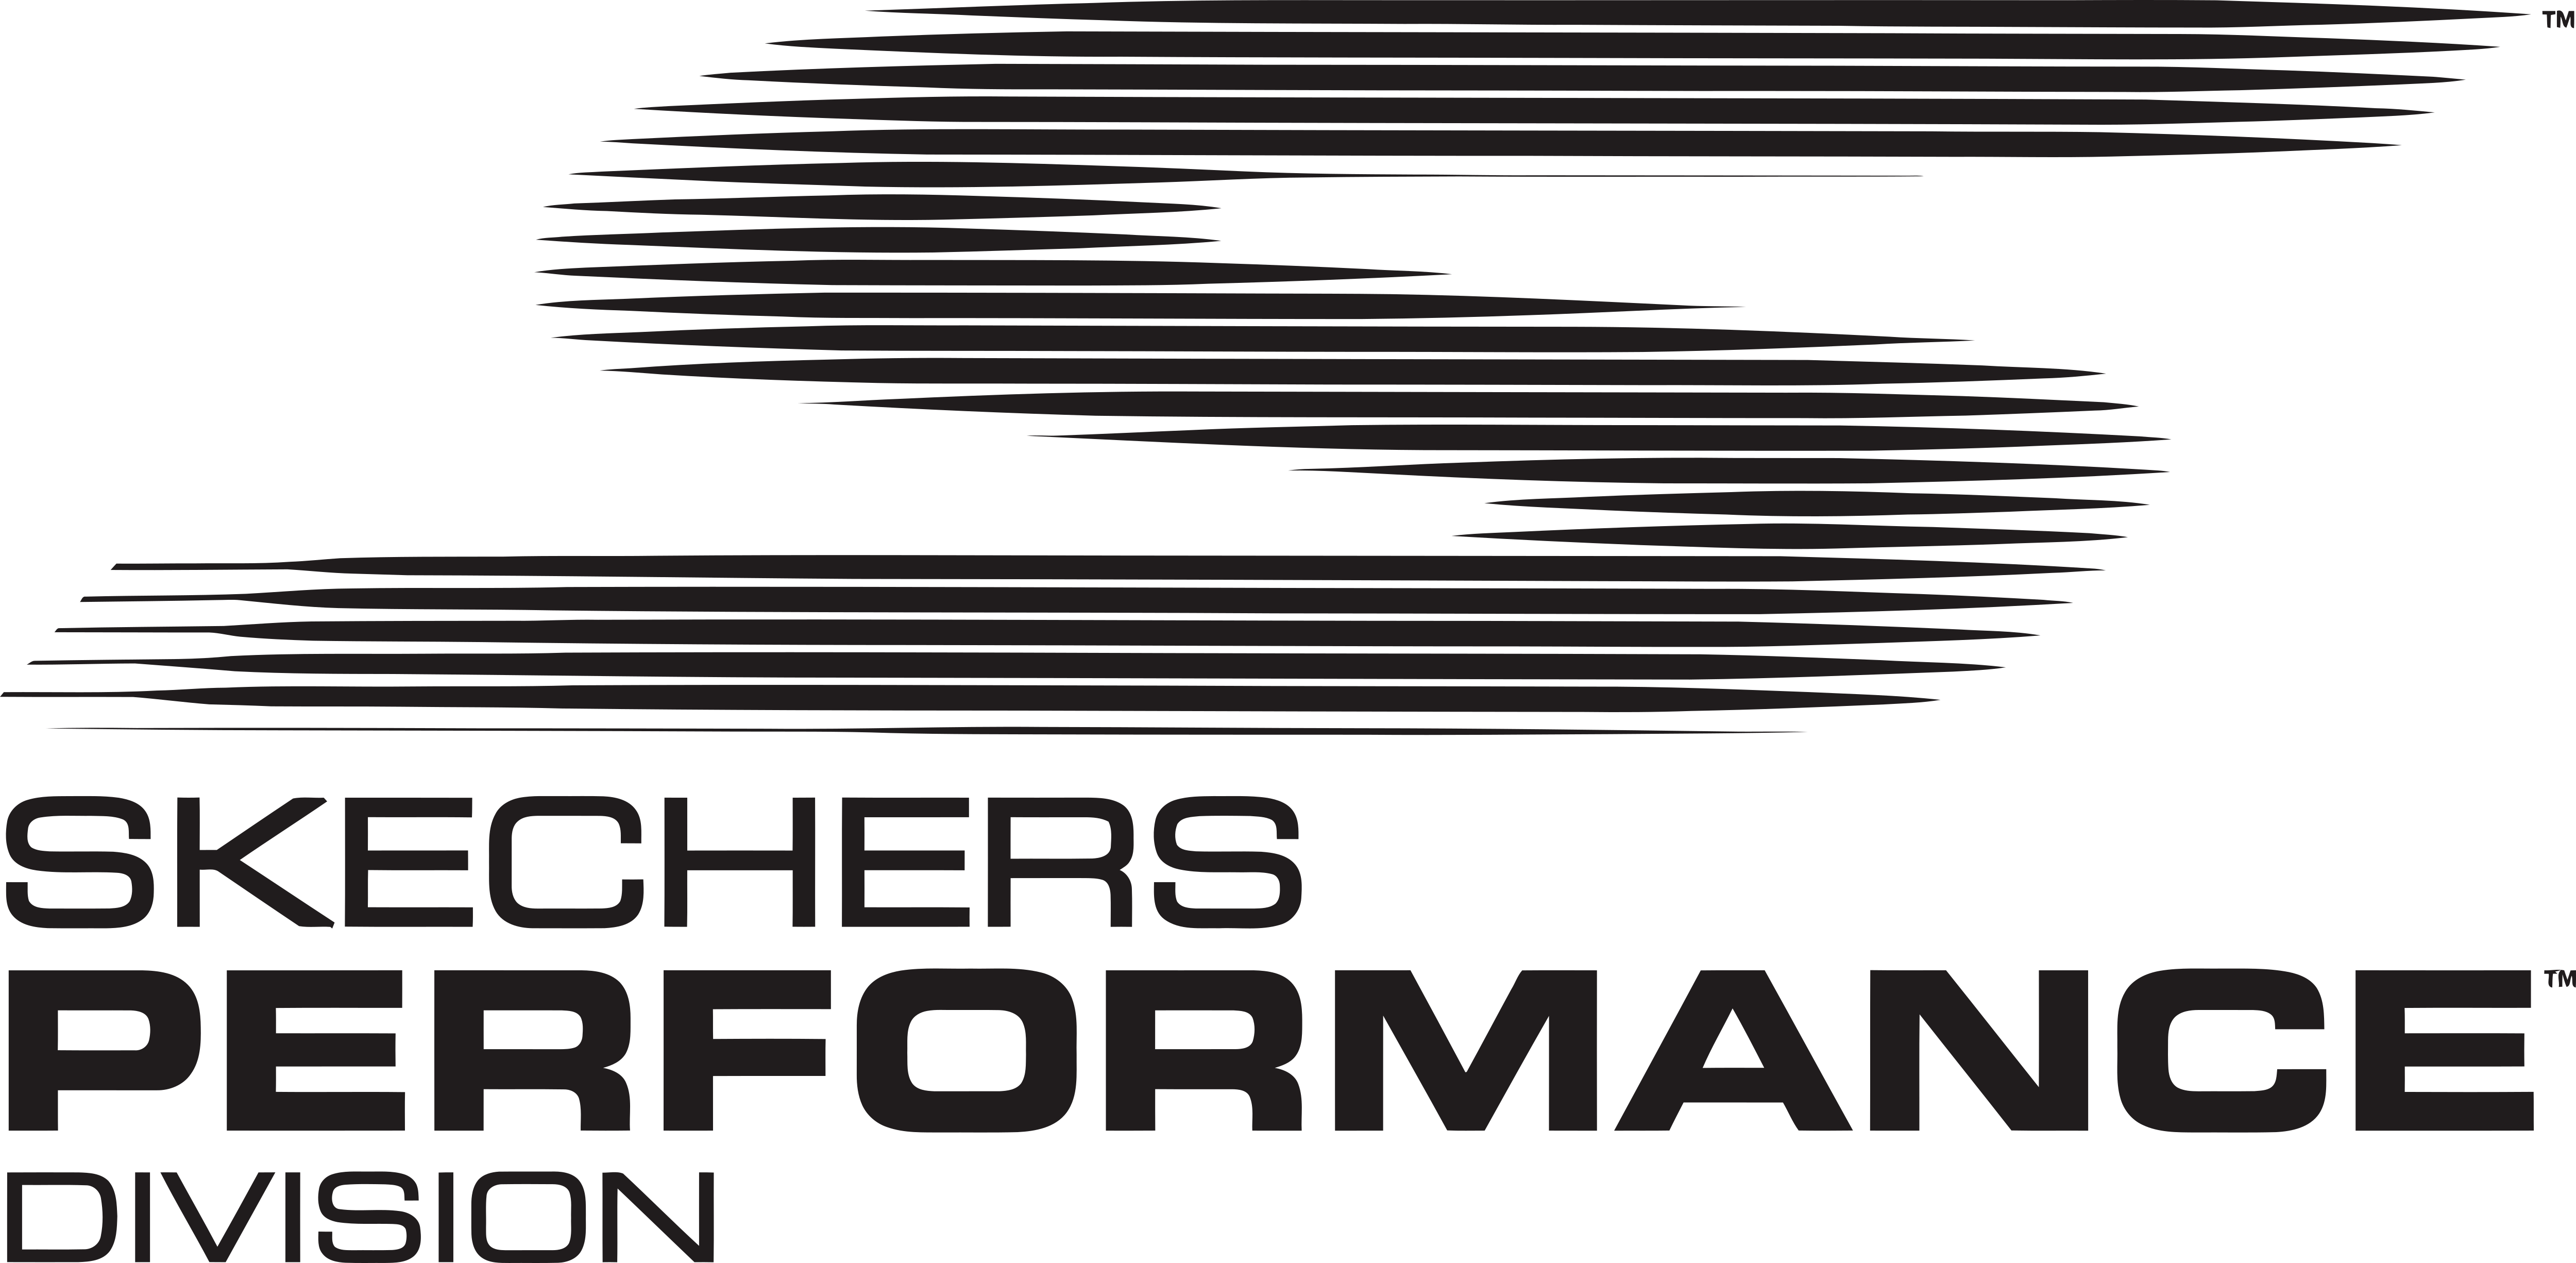 Skechers Logo Png Transparent